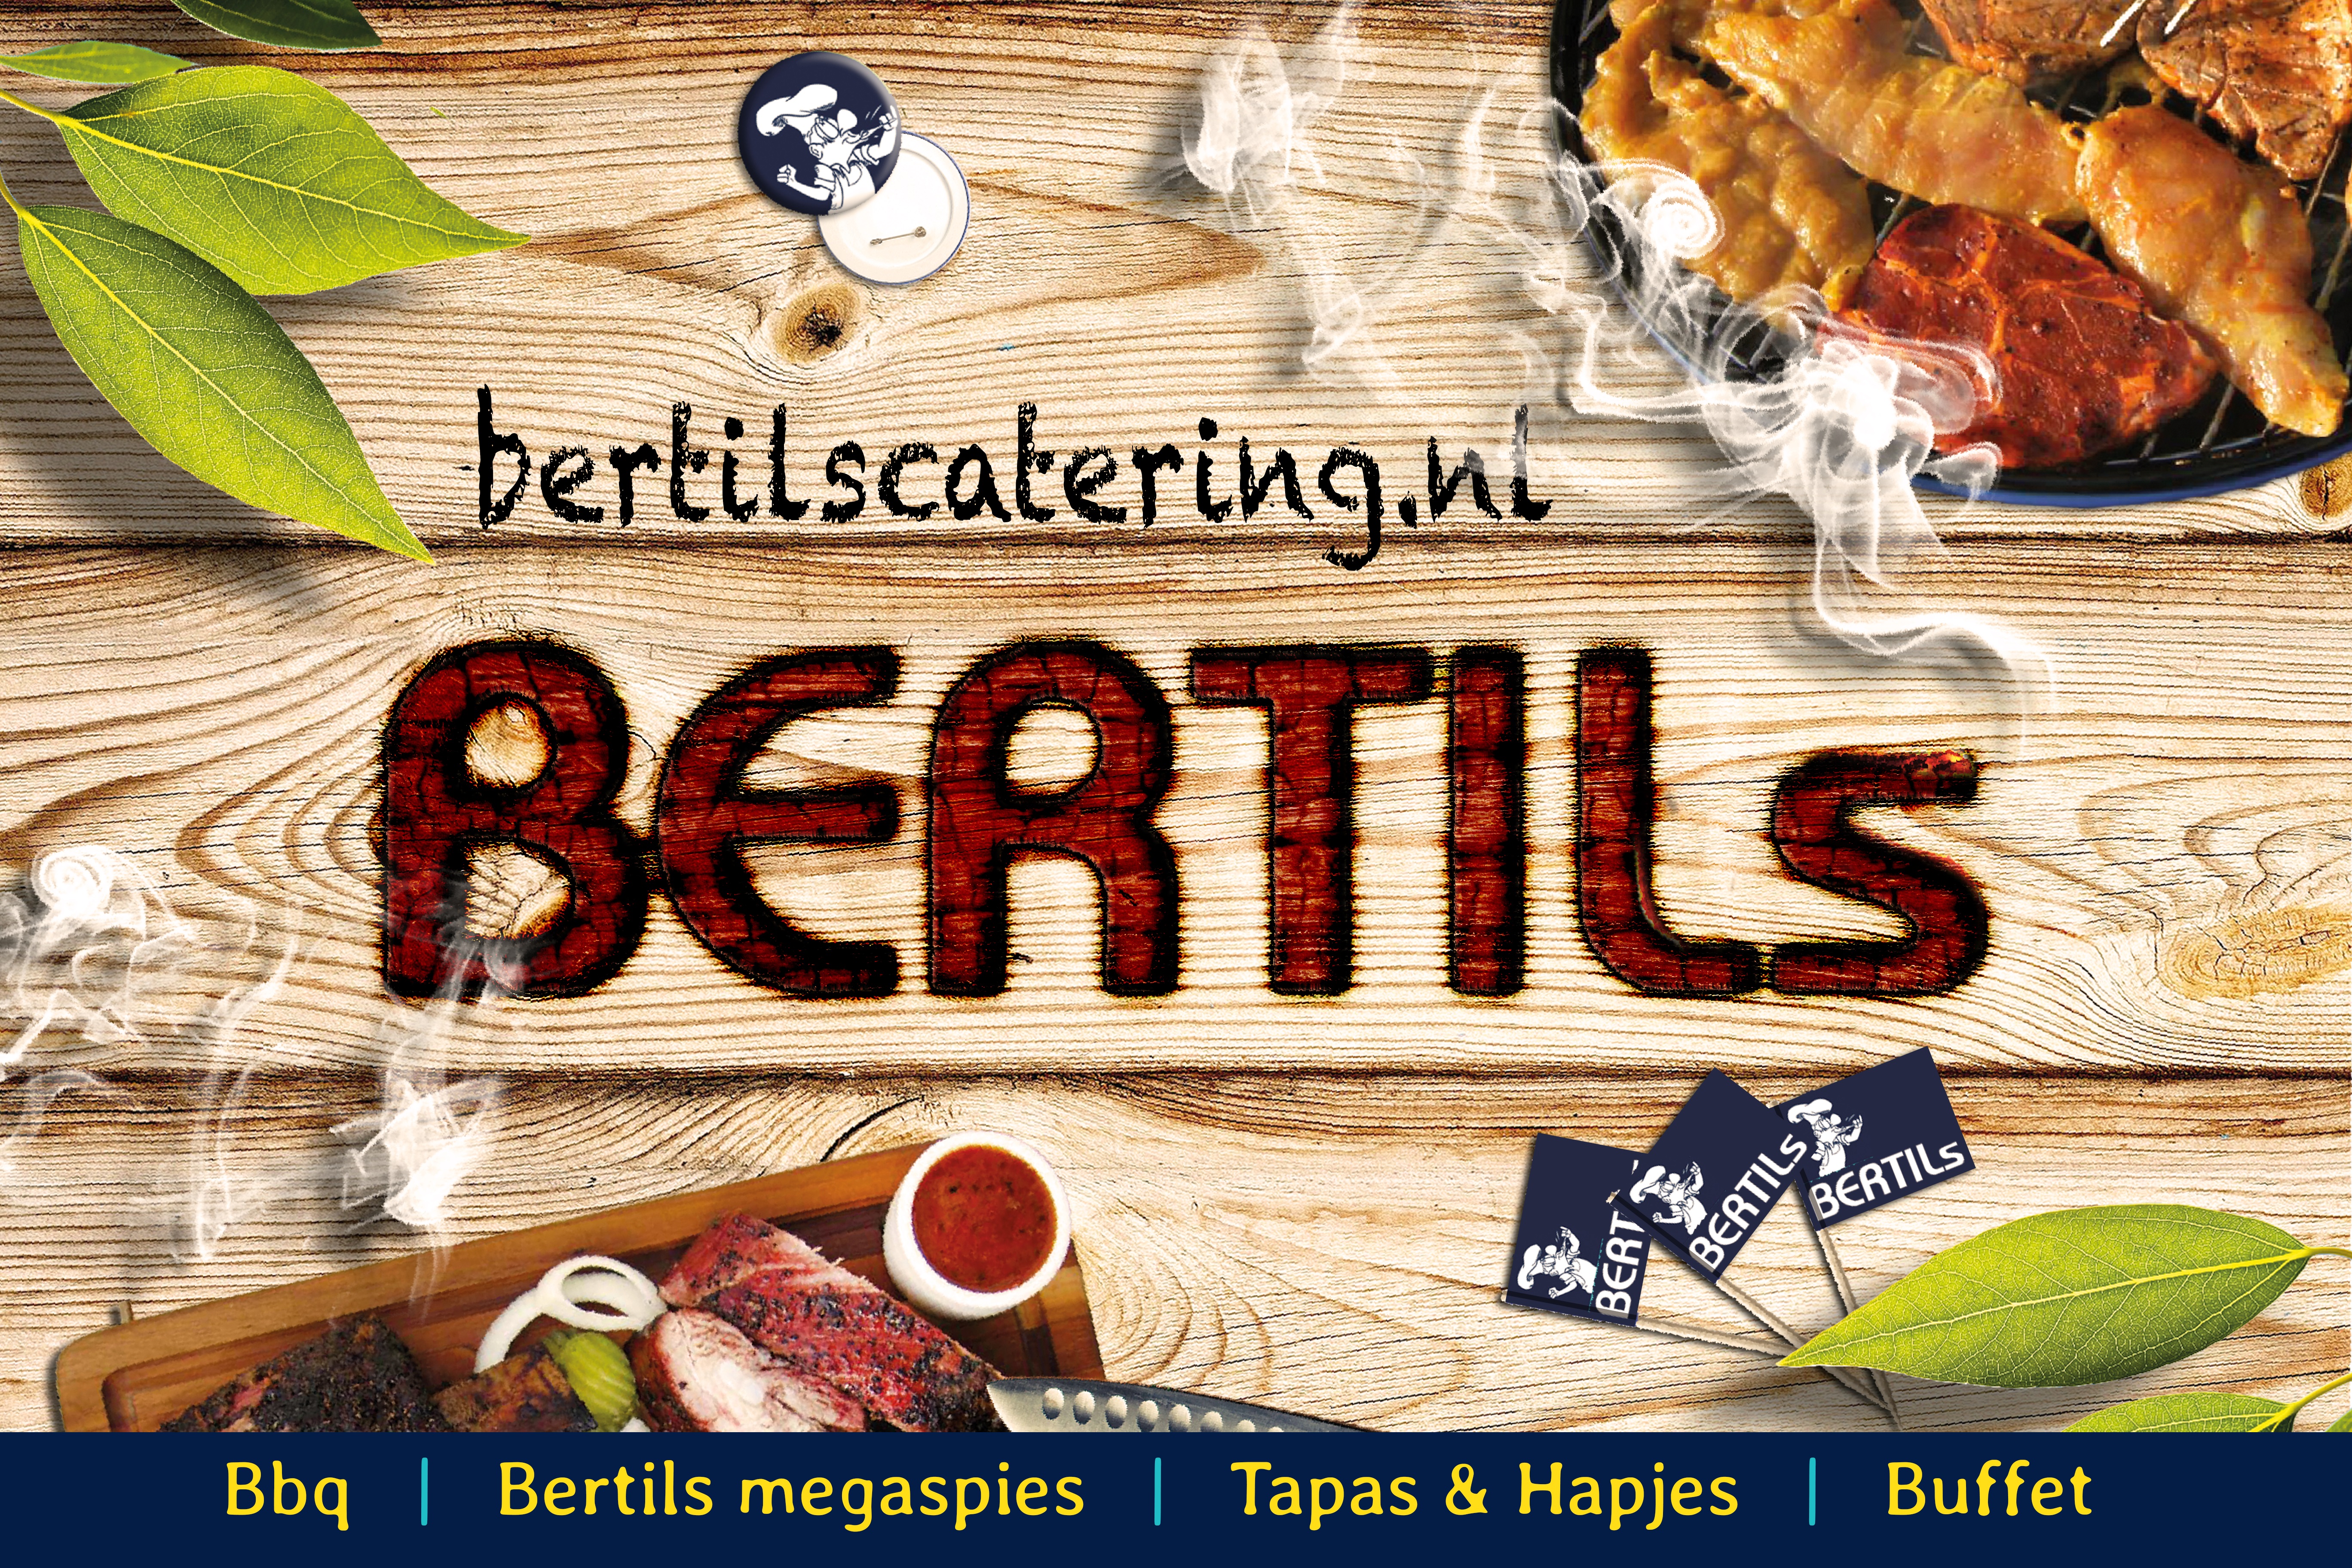 Bertils Catering